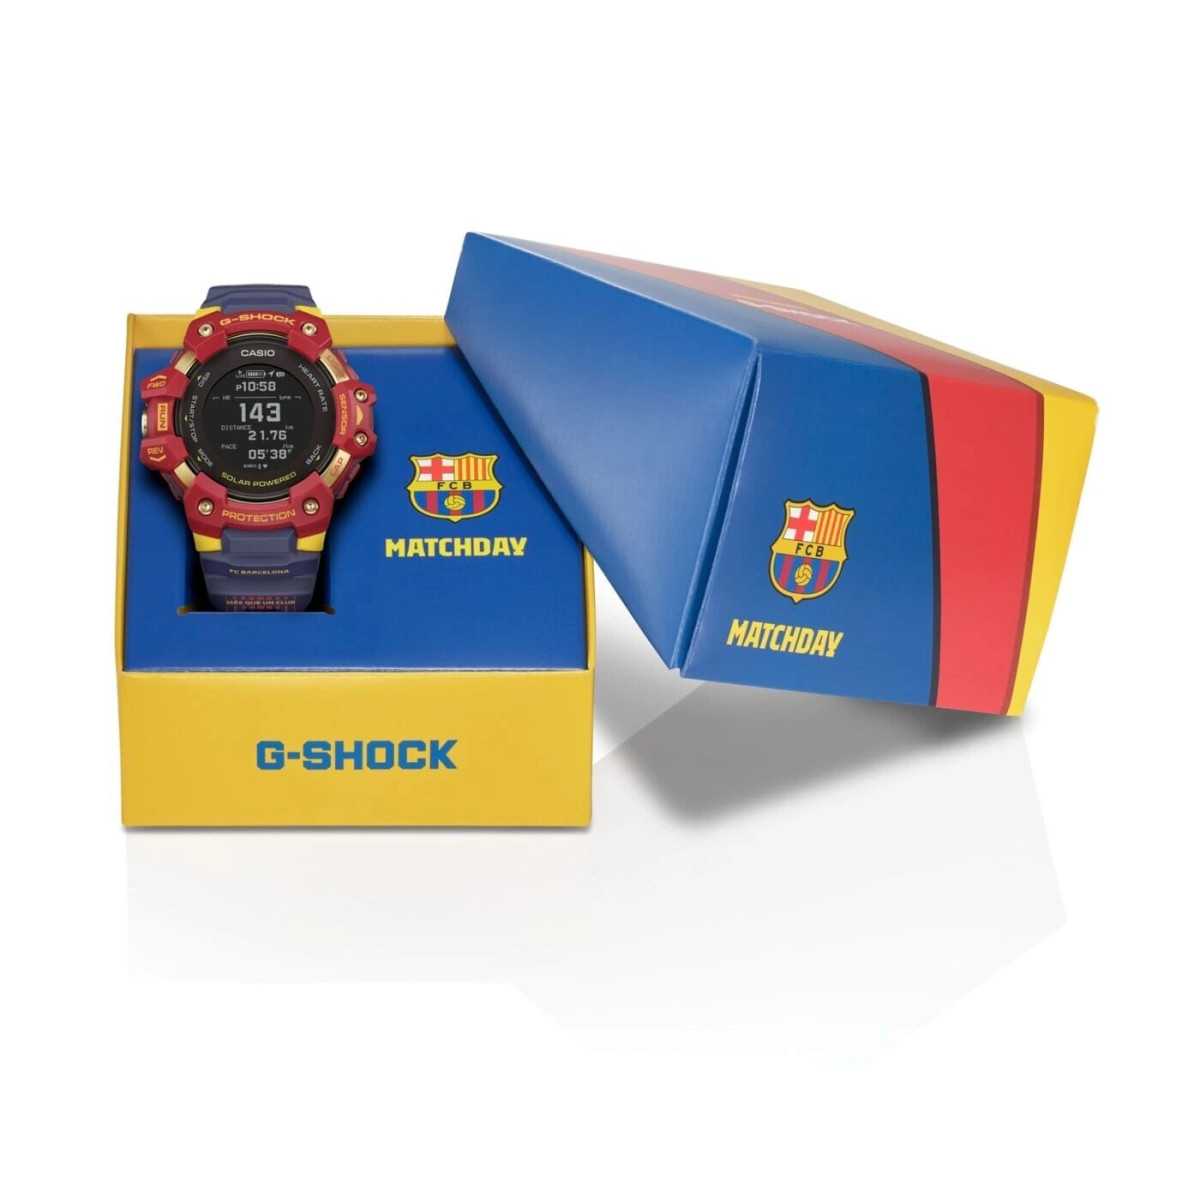 DW-5610Y-9 G-Shock Reloj Digital para Caballero Pulsera de Goma